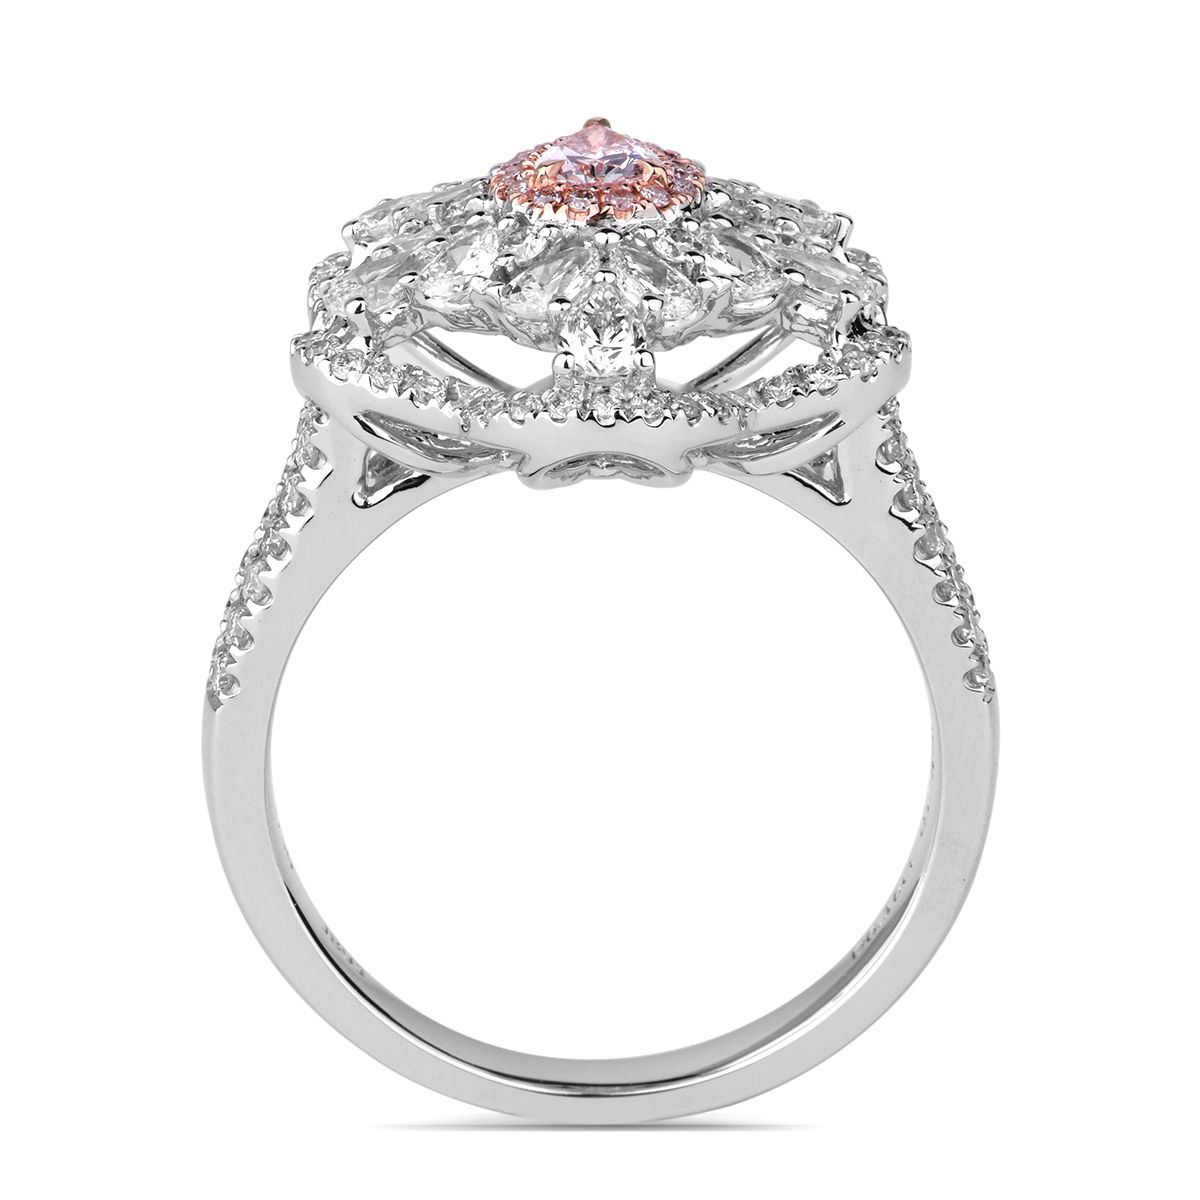 浅 粉色 钻石 戒指, 0.16 重量 (1.51 克拉 总重), 梨型 形状, GIA 认证, 5181017403